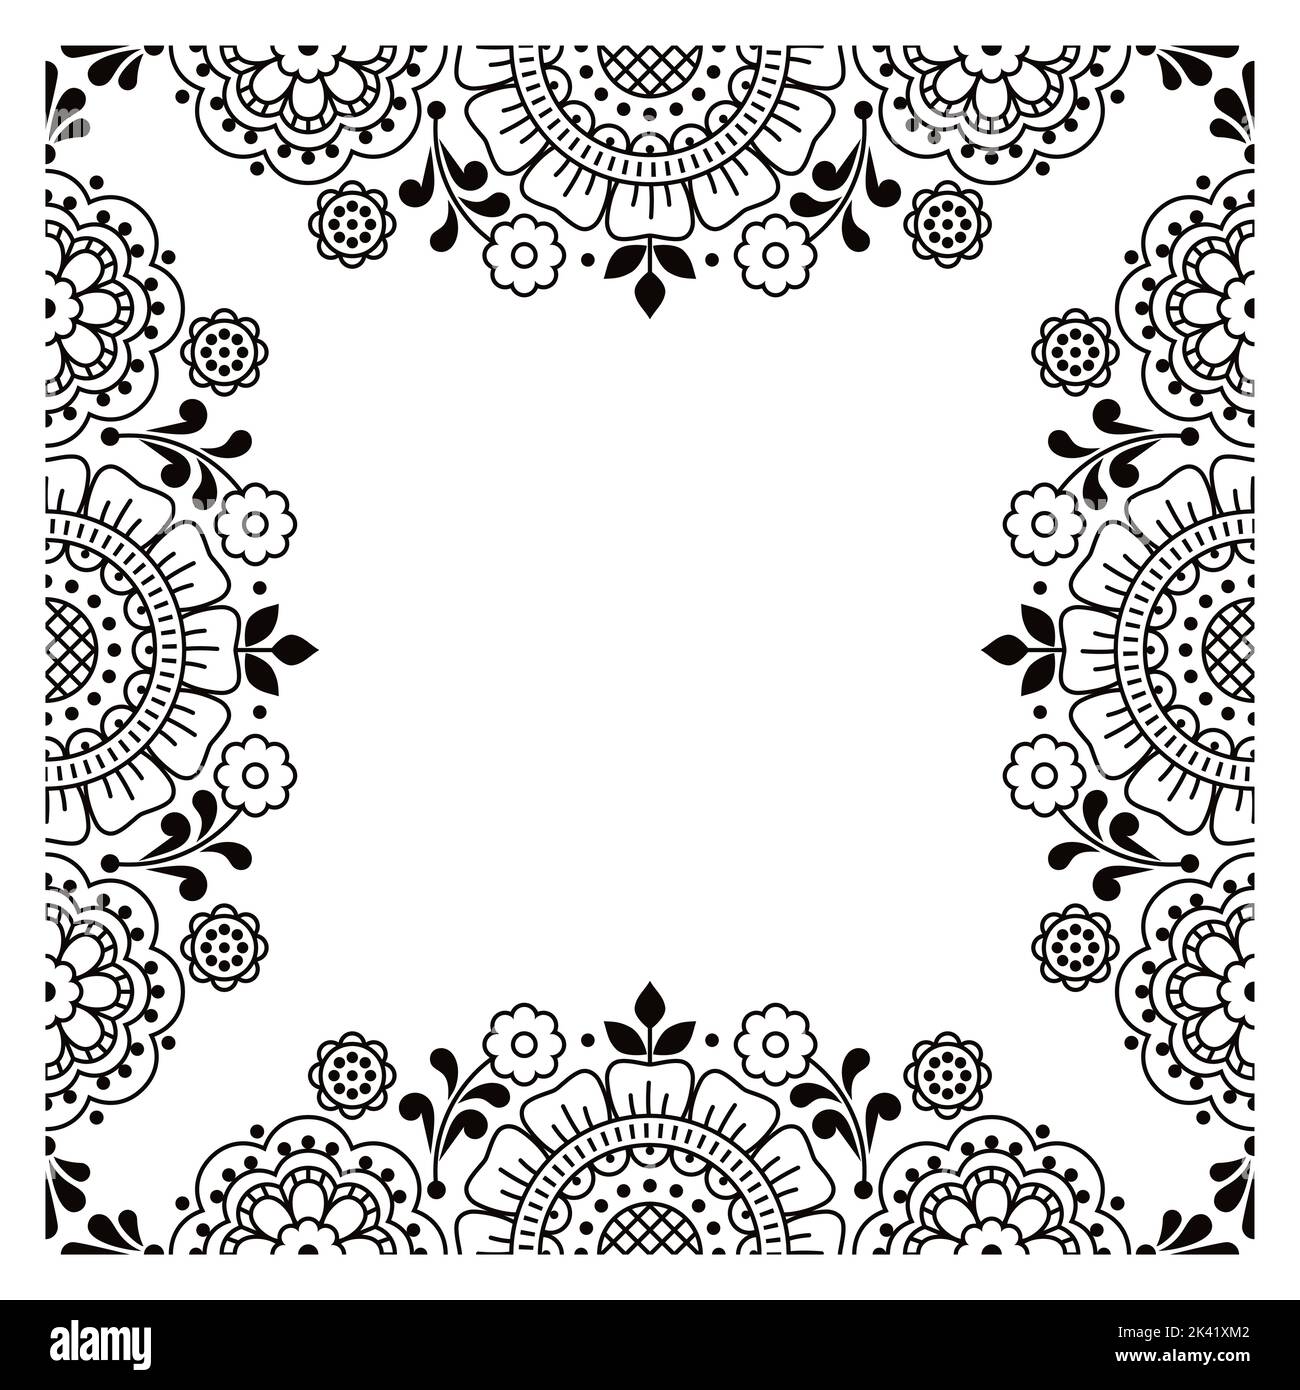 Skandinavische oder nordische Volkskunst Stil Blumenumriss Vektor Grußkarte oder Hochzeit Einladung Muster in sqaure in schwarz und weiß Stock Vektor